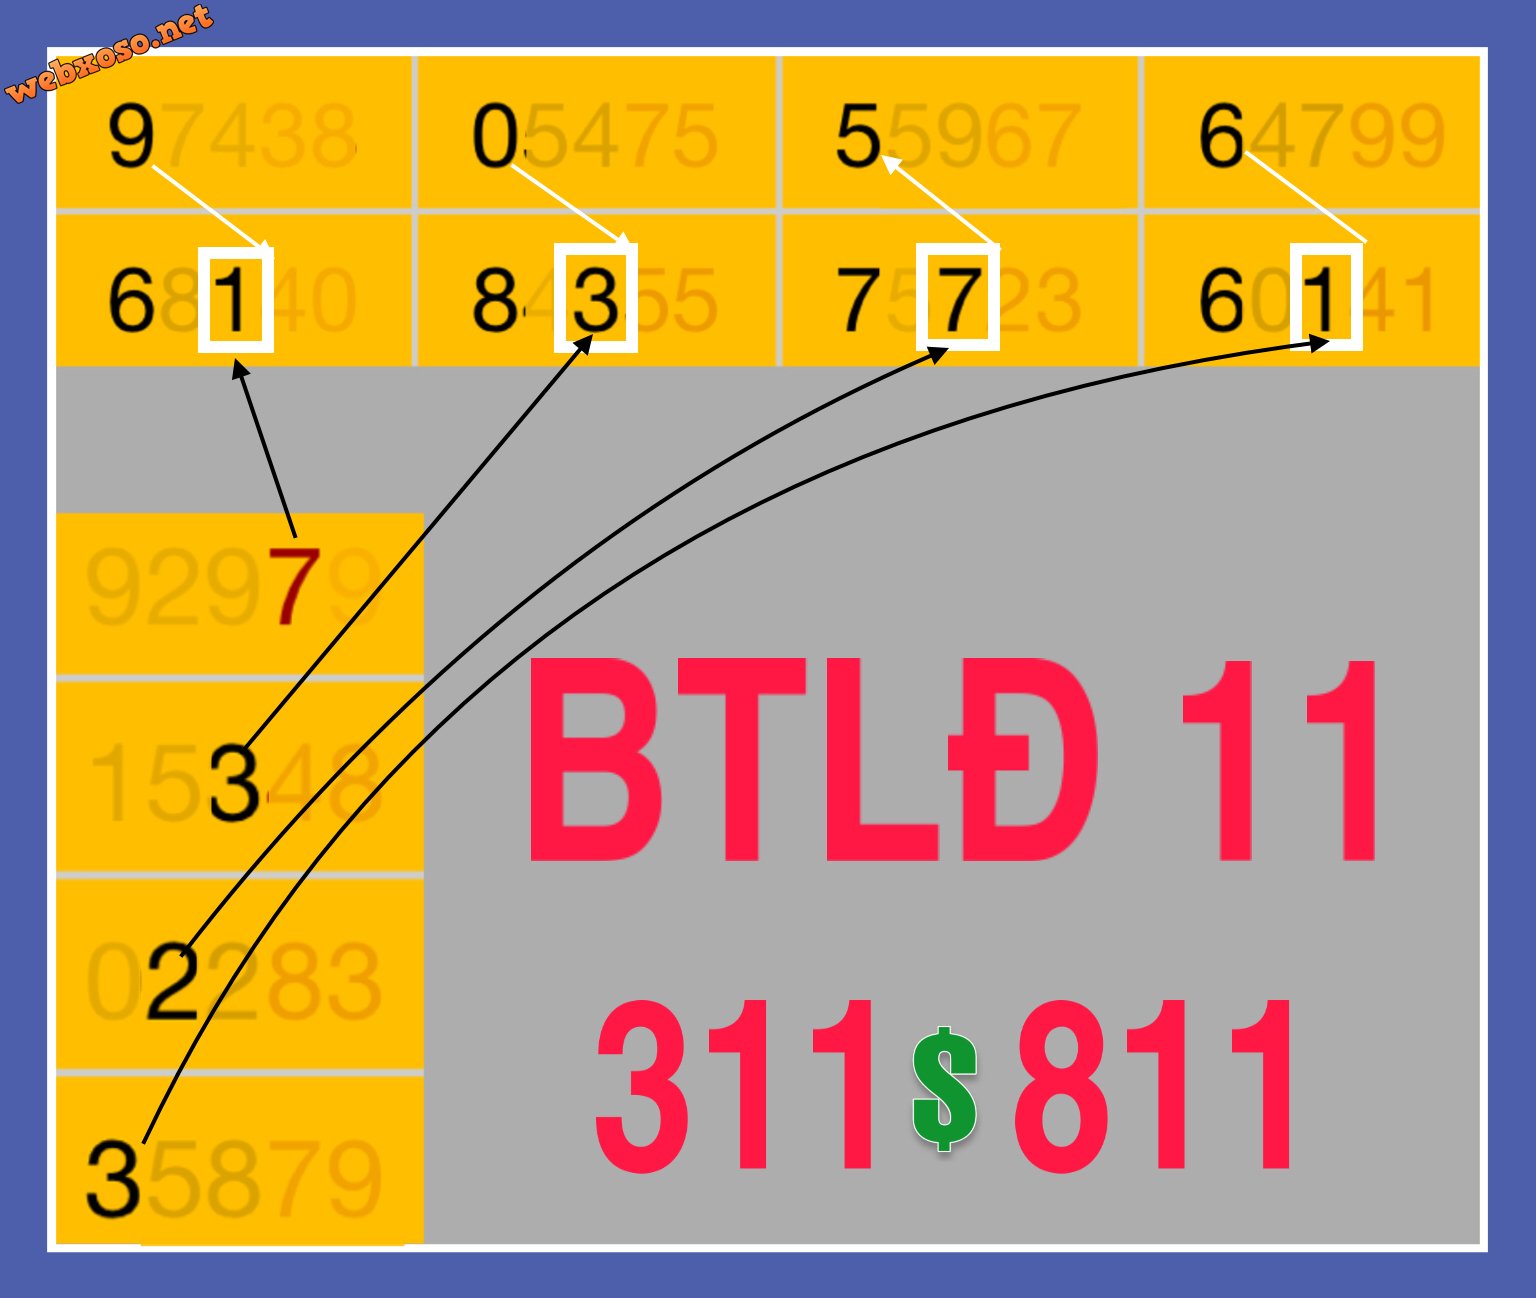 82F54463-6FAD-450A-BD07-D20E827B7961.jpeg